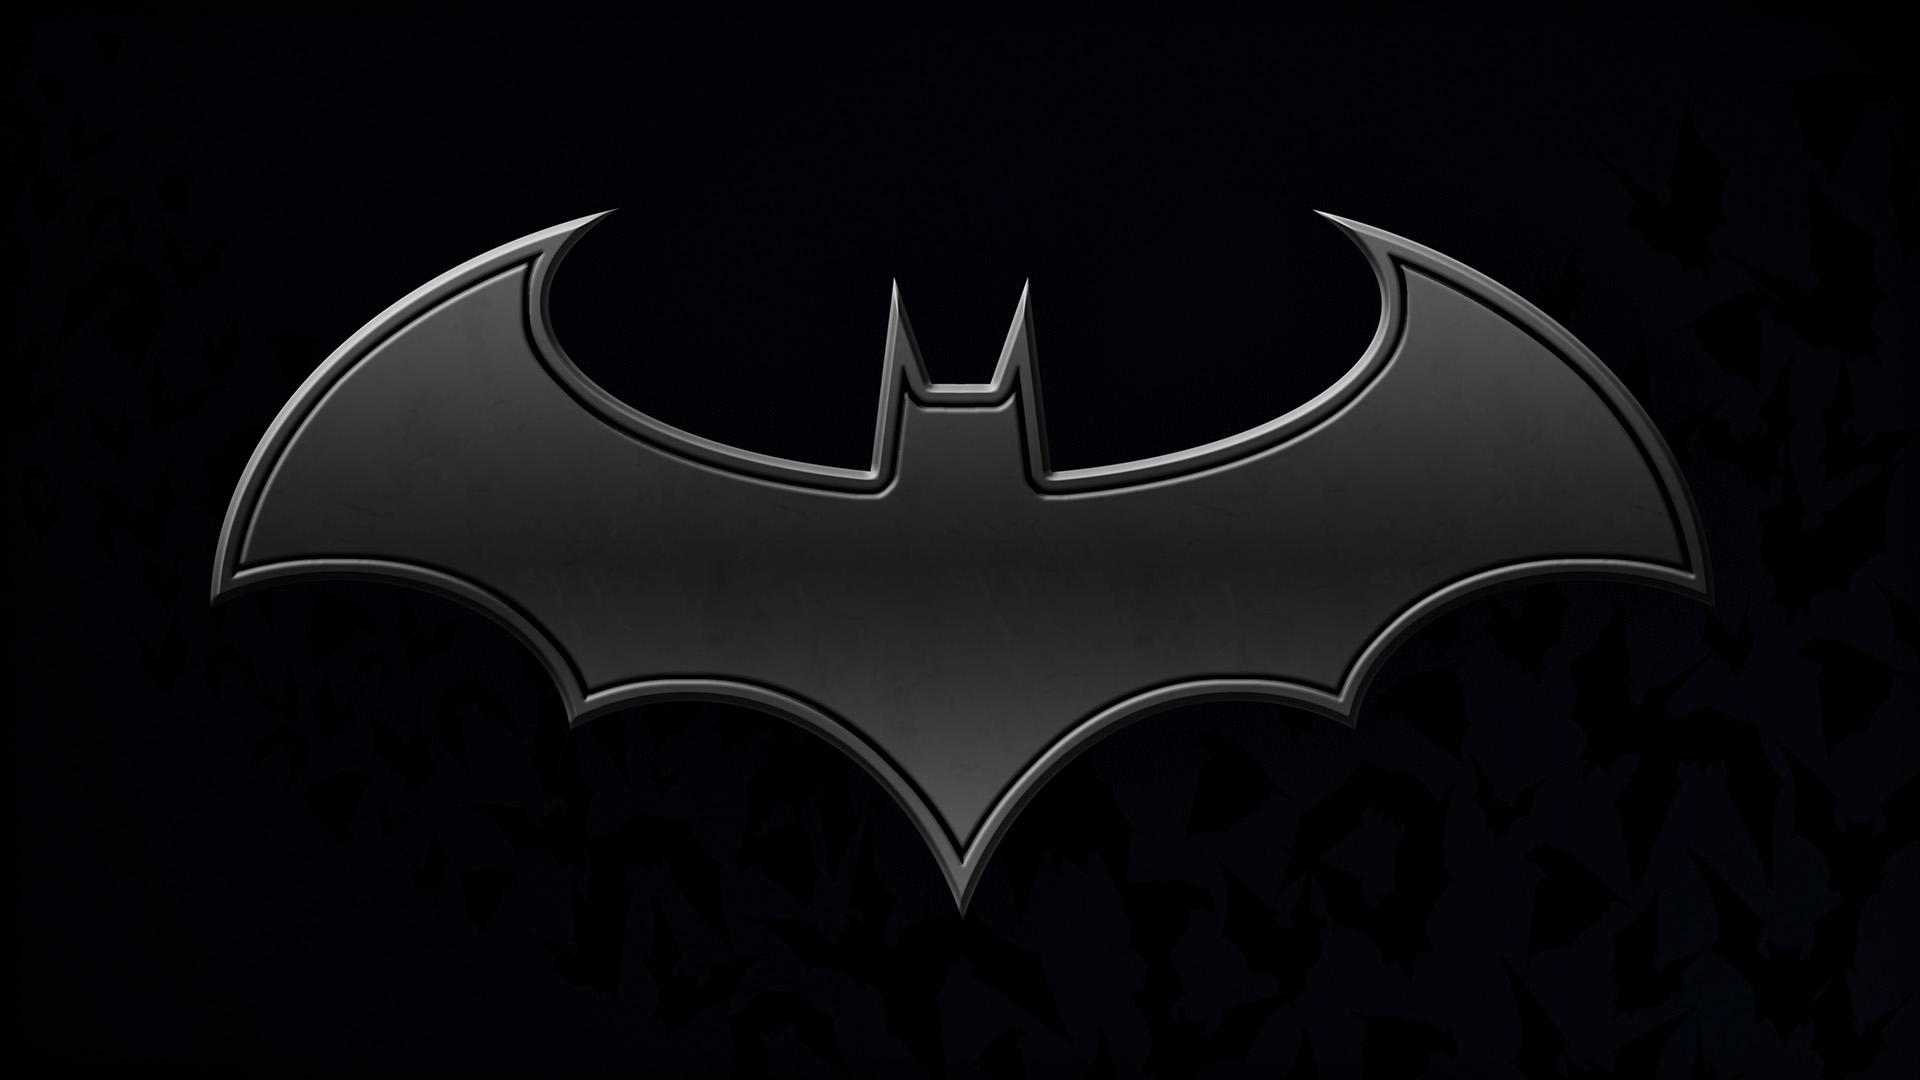 hd wallpaper batman logo by deathonabun | wallpapers55.com - Best ...